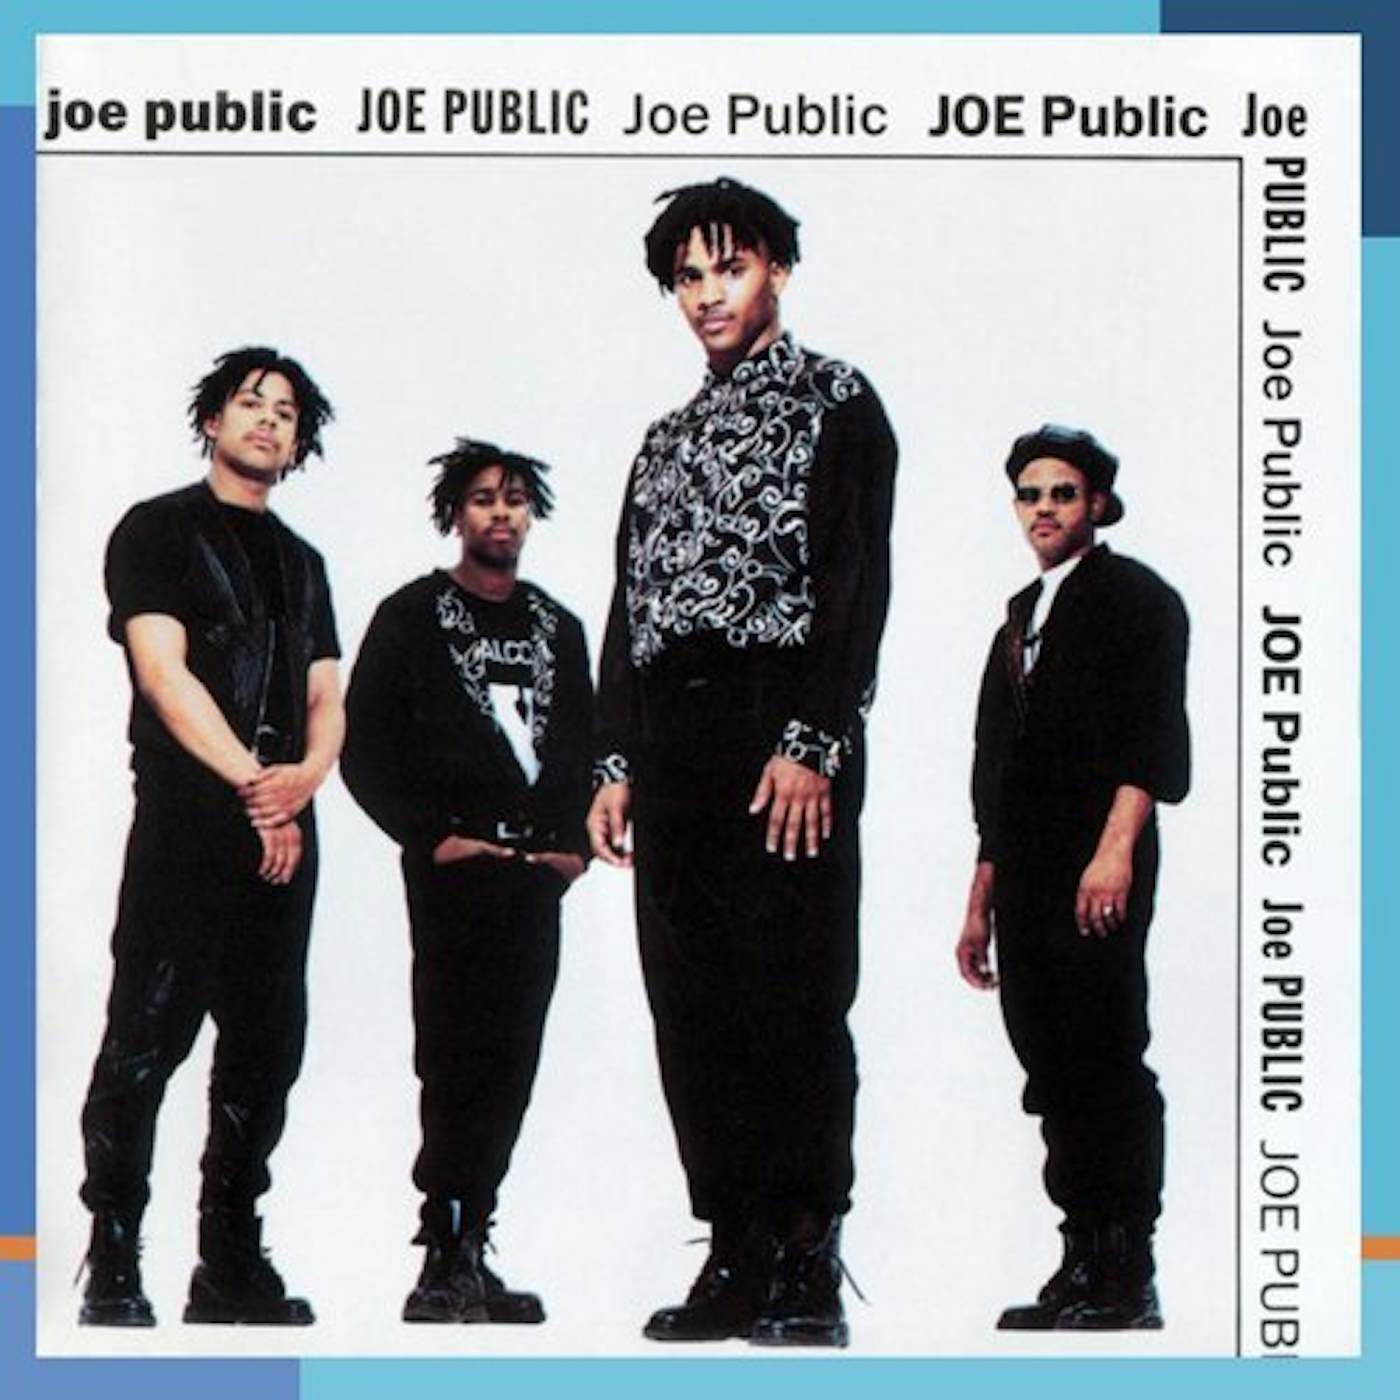 Joe Public LIVE & LEARN CD